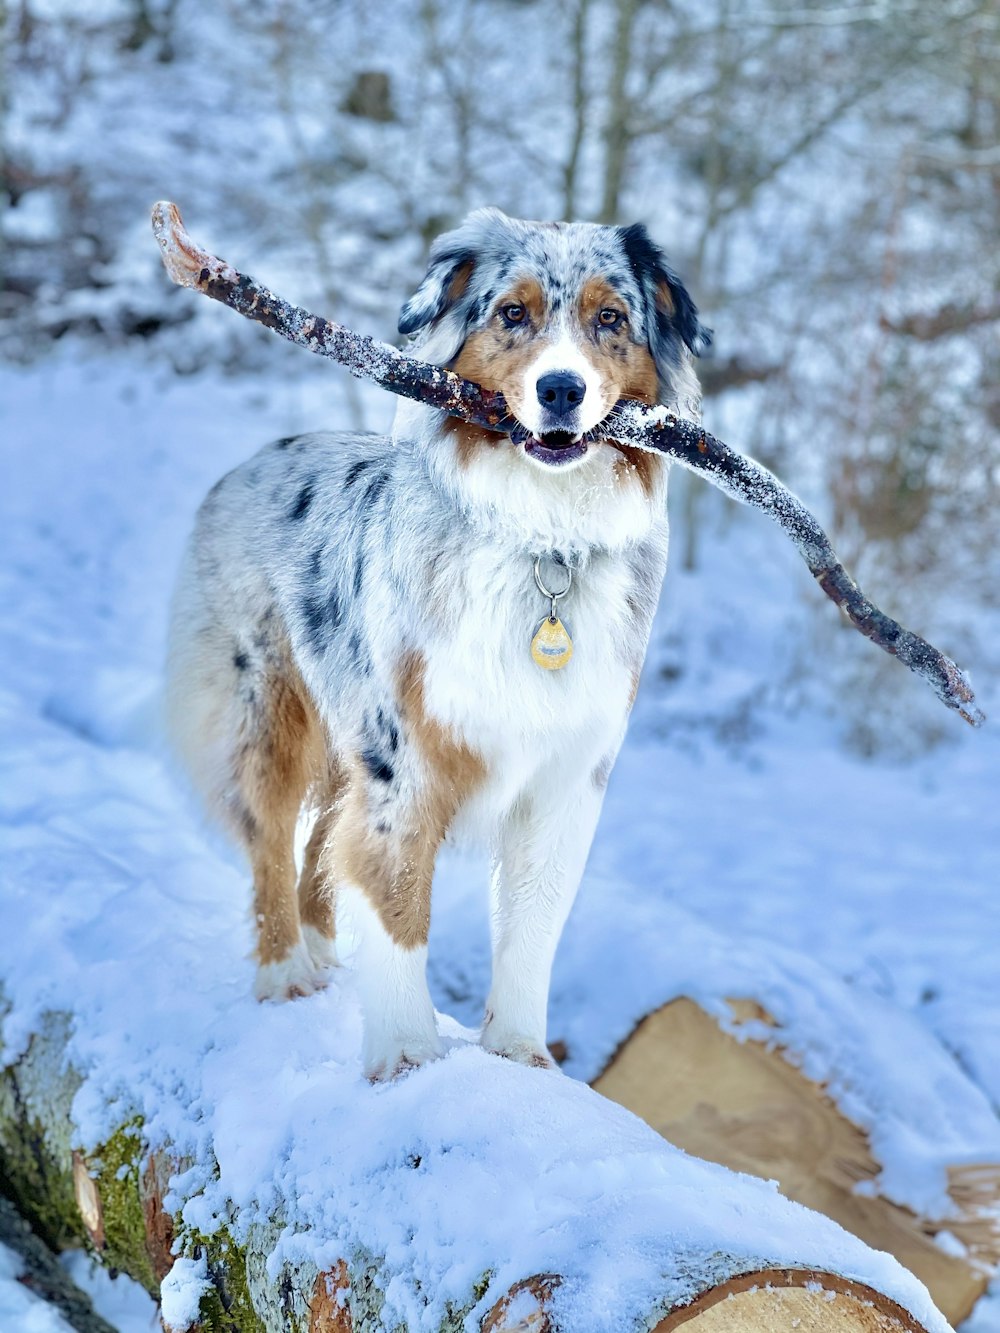 weißer und brauner kurzhaariger Hund tagsüber auf schneebedecktem Boden